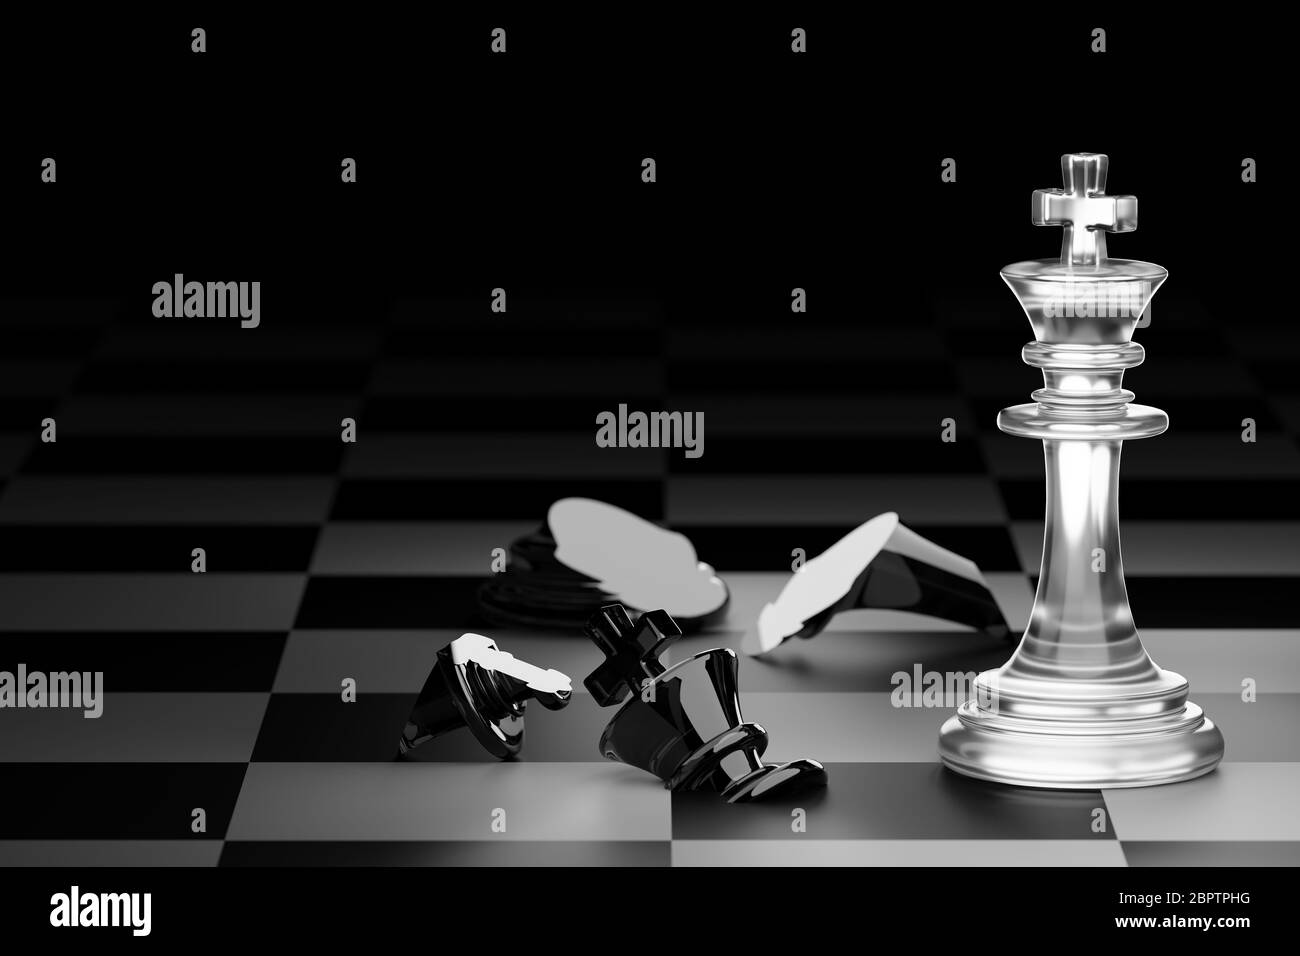 Roi d'échecs blancs clairs a fait le chéquier roi d'échecs noirs sur fond noir foncé. Concept de la planification stratégique du leadership pour la victoire Banque D'Images